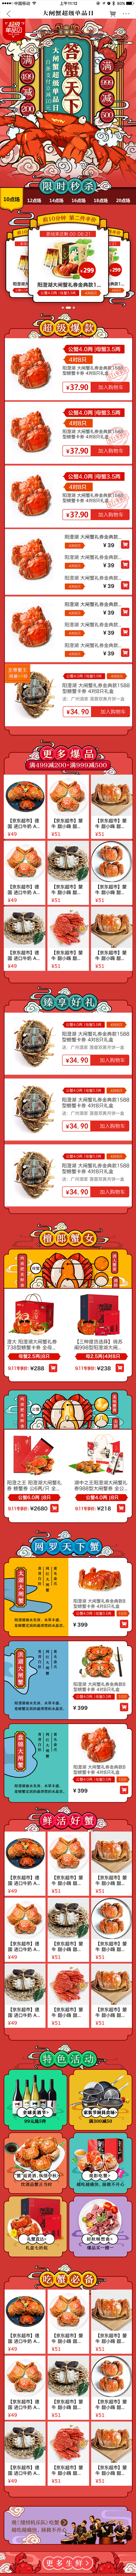 京东生鲜大闸蟹超级单品日活动促销页面